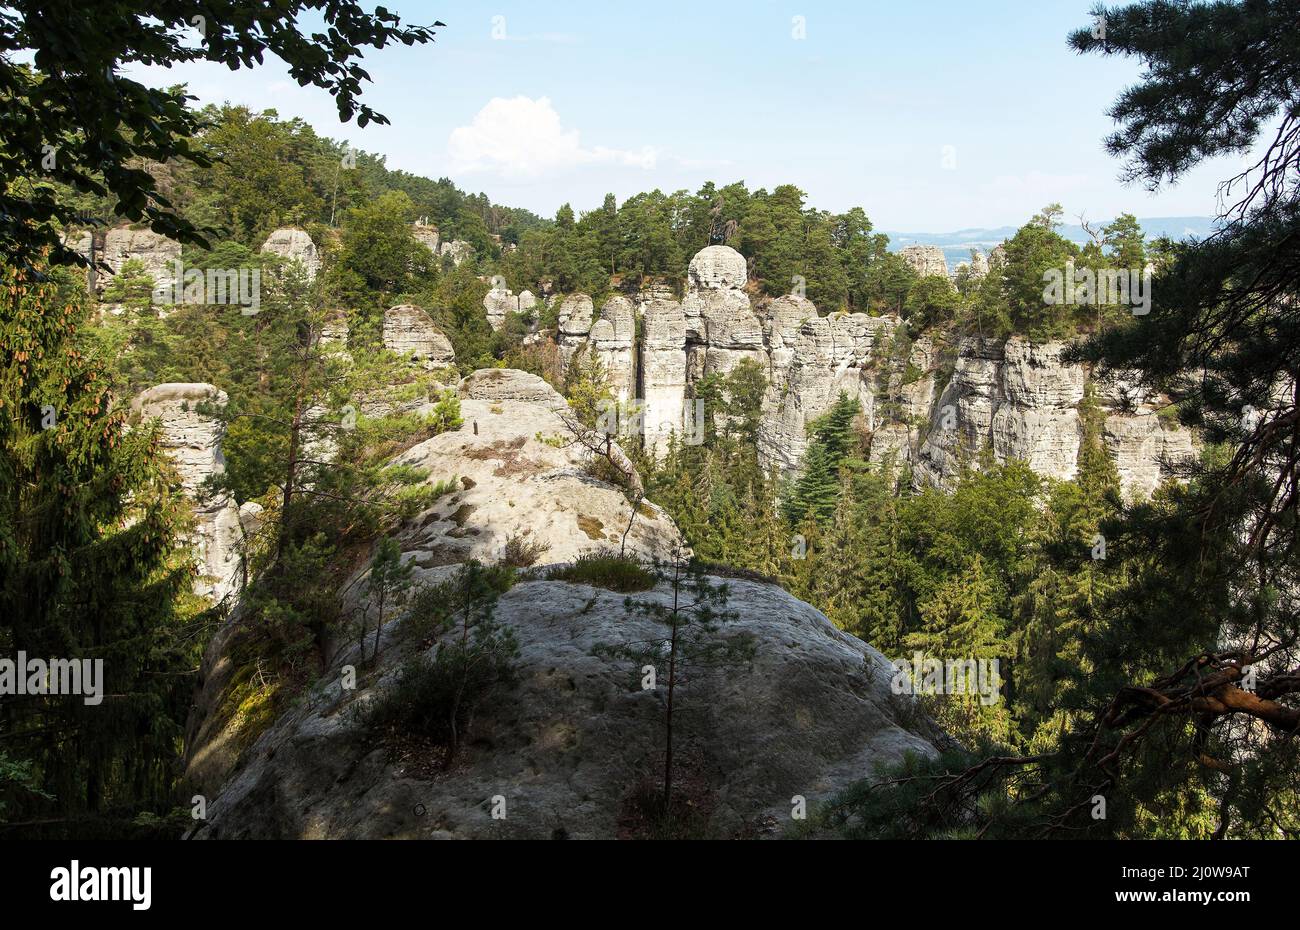 Hruboskalske skalni mesto panorama rock, ville de grès rock, Cesky raj, paradis tchèque ou bohémien, République tchèque Banque D'Images